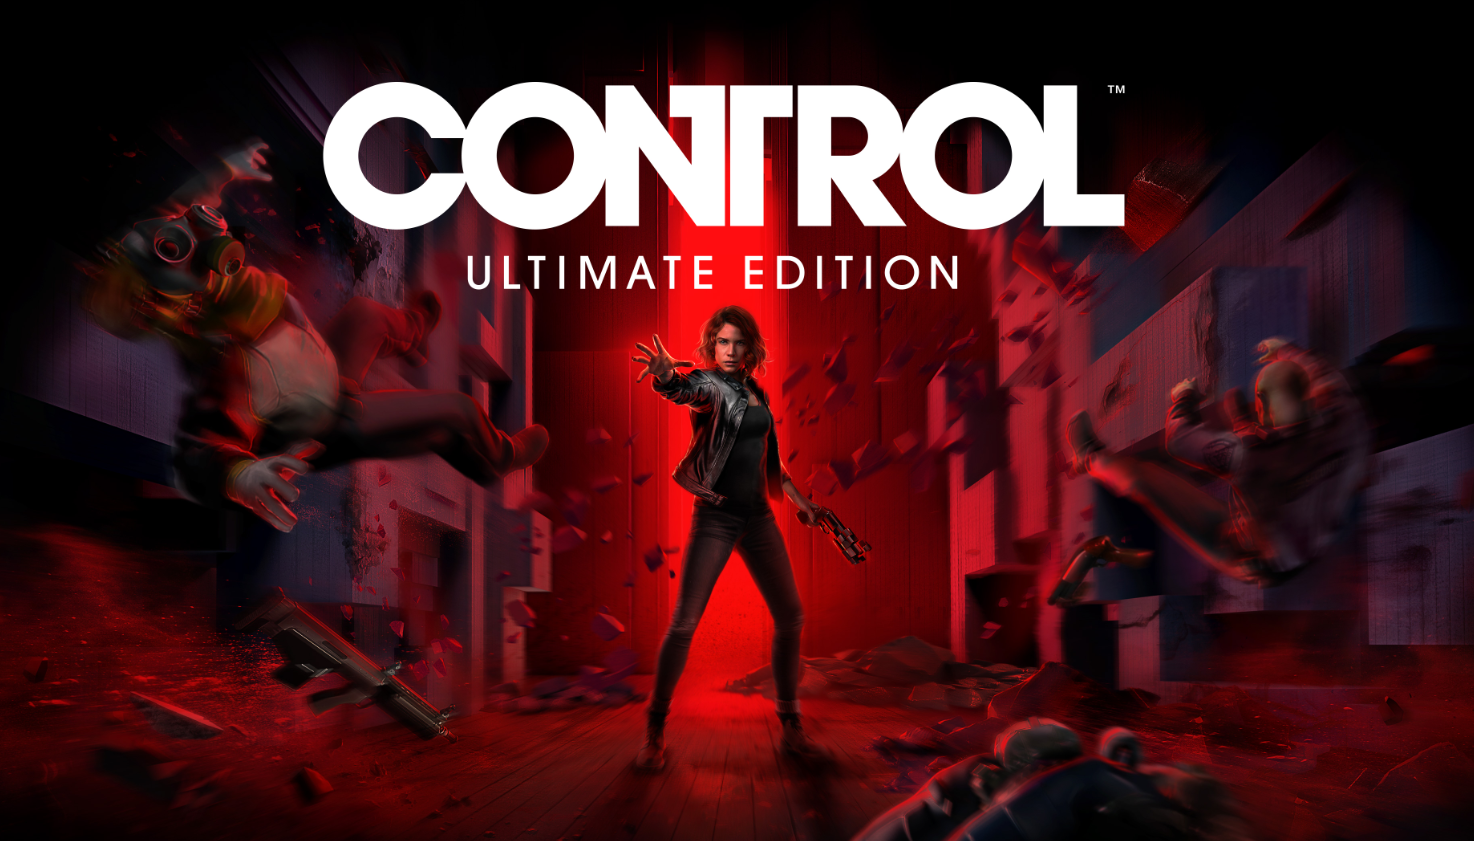 《控制》终极版将登陆Steam 主机版可升级至次世代版本